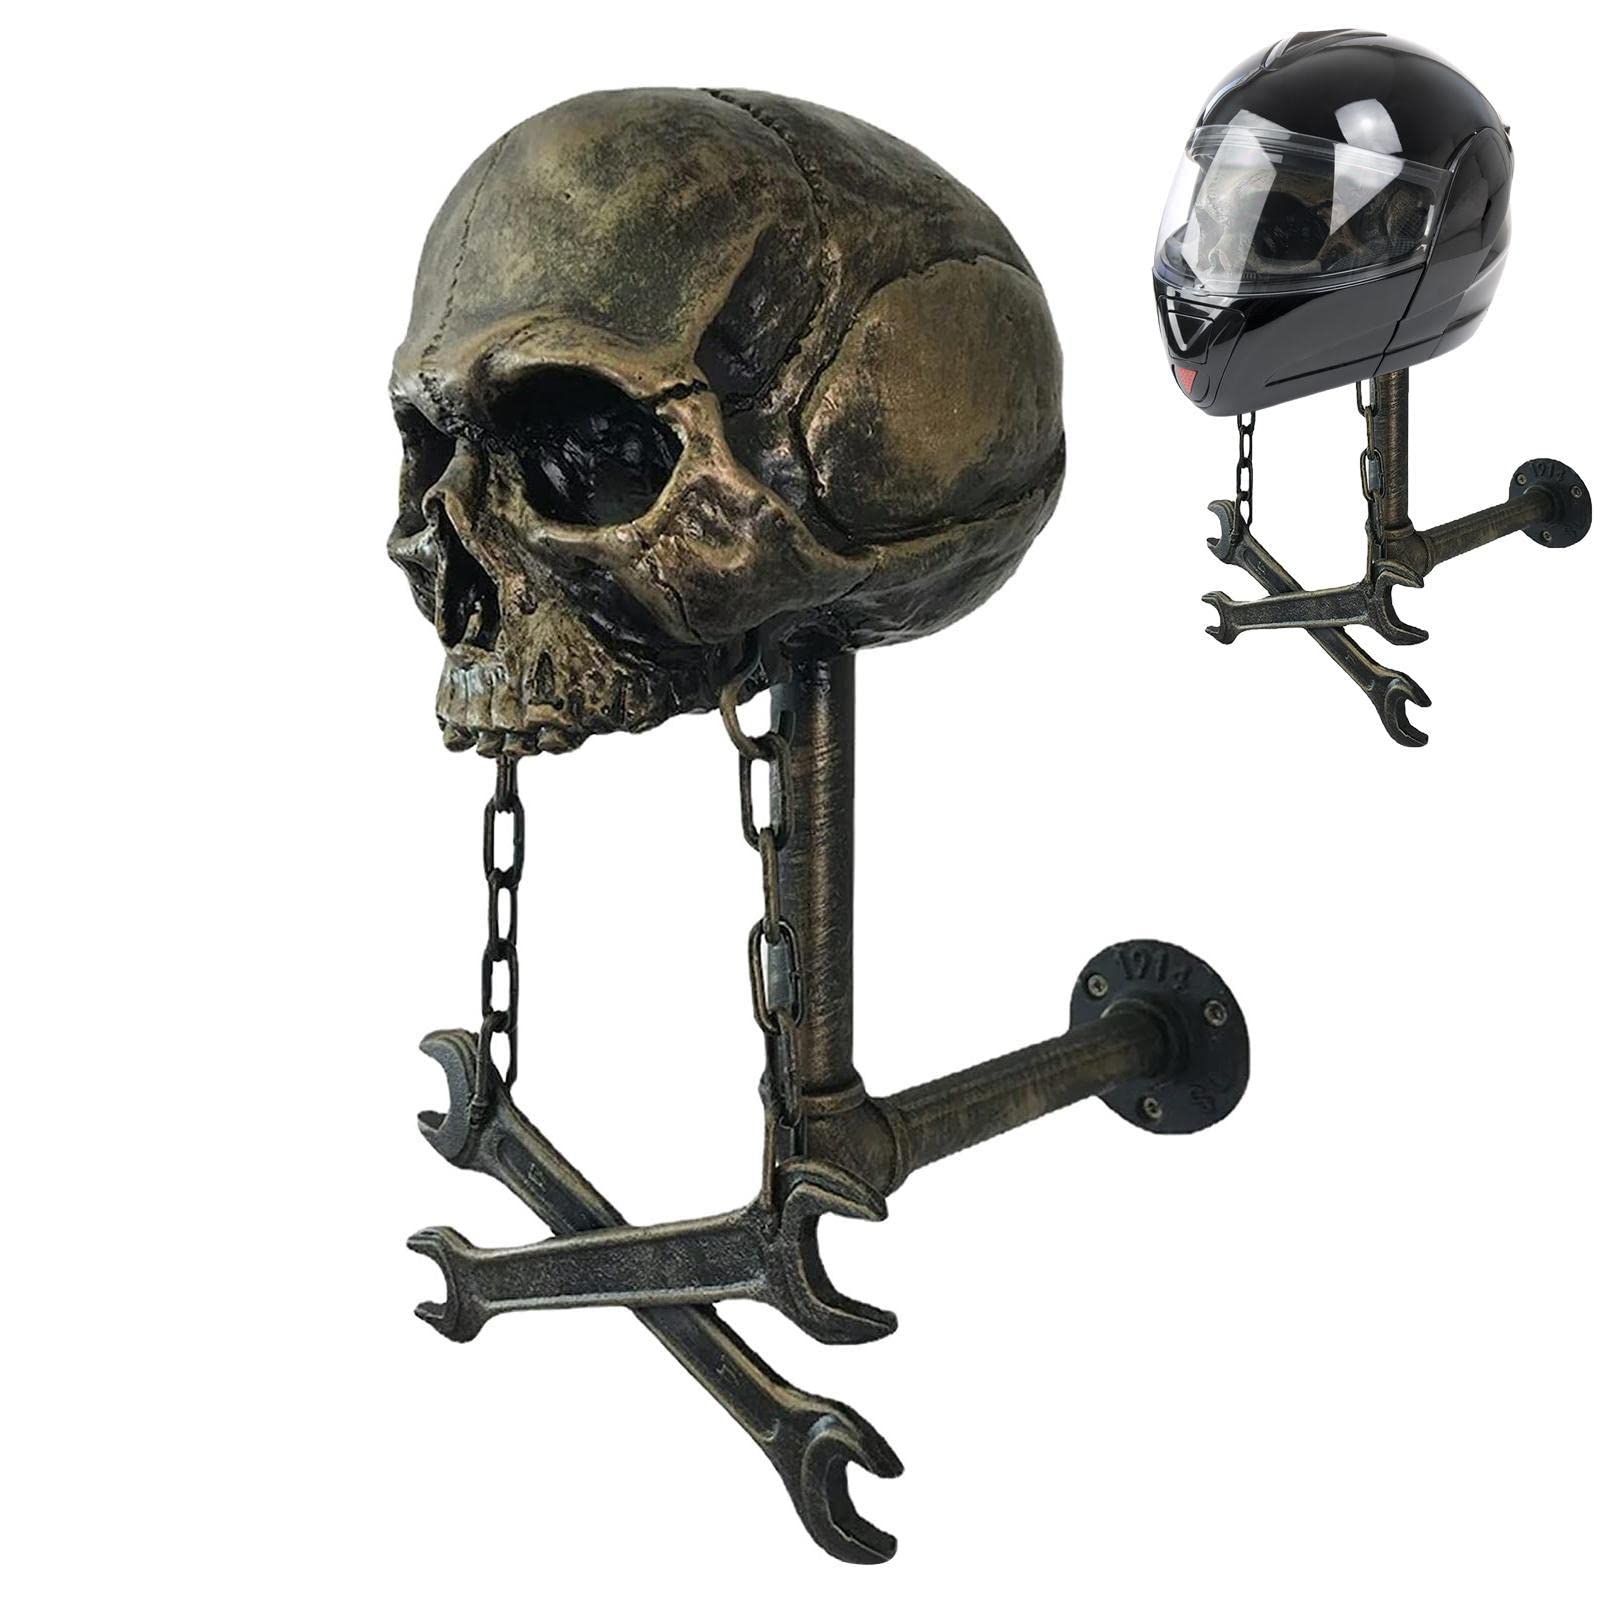 Bexdug Totenkopf Helm Display | Skull Motorradhelmhalter Wandhalterung | Halterung für Motorradhelme, Halter für Schädelhelme aus Kunstharz, Rugby-Helme und Fahrradzubehör von Bexdug